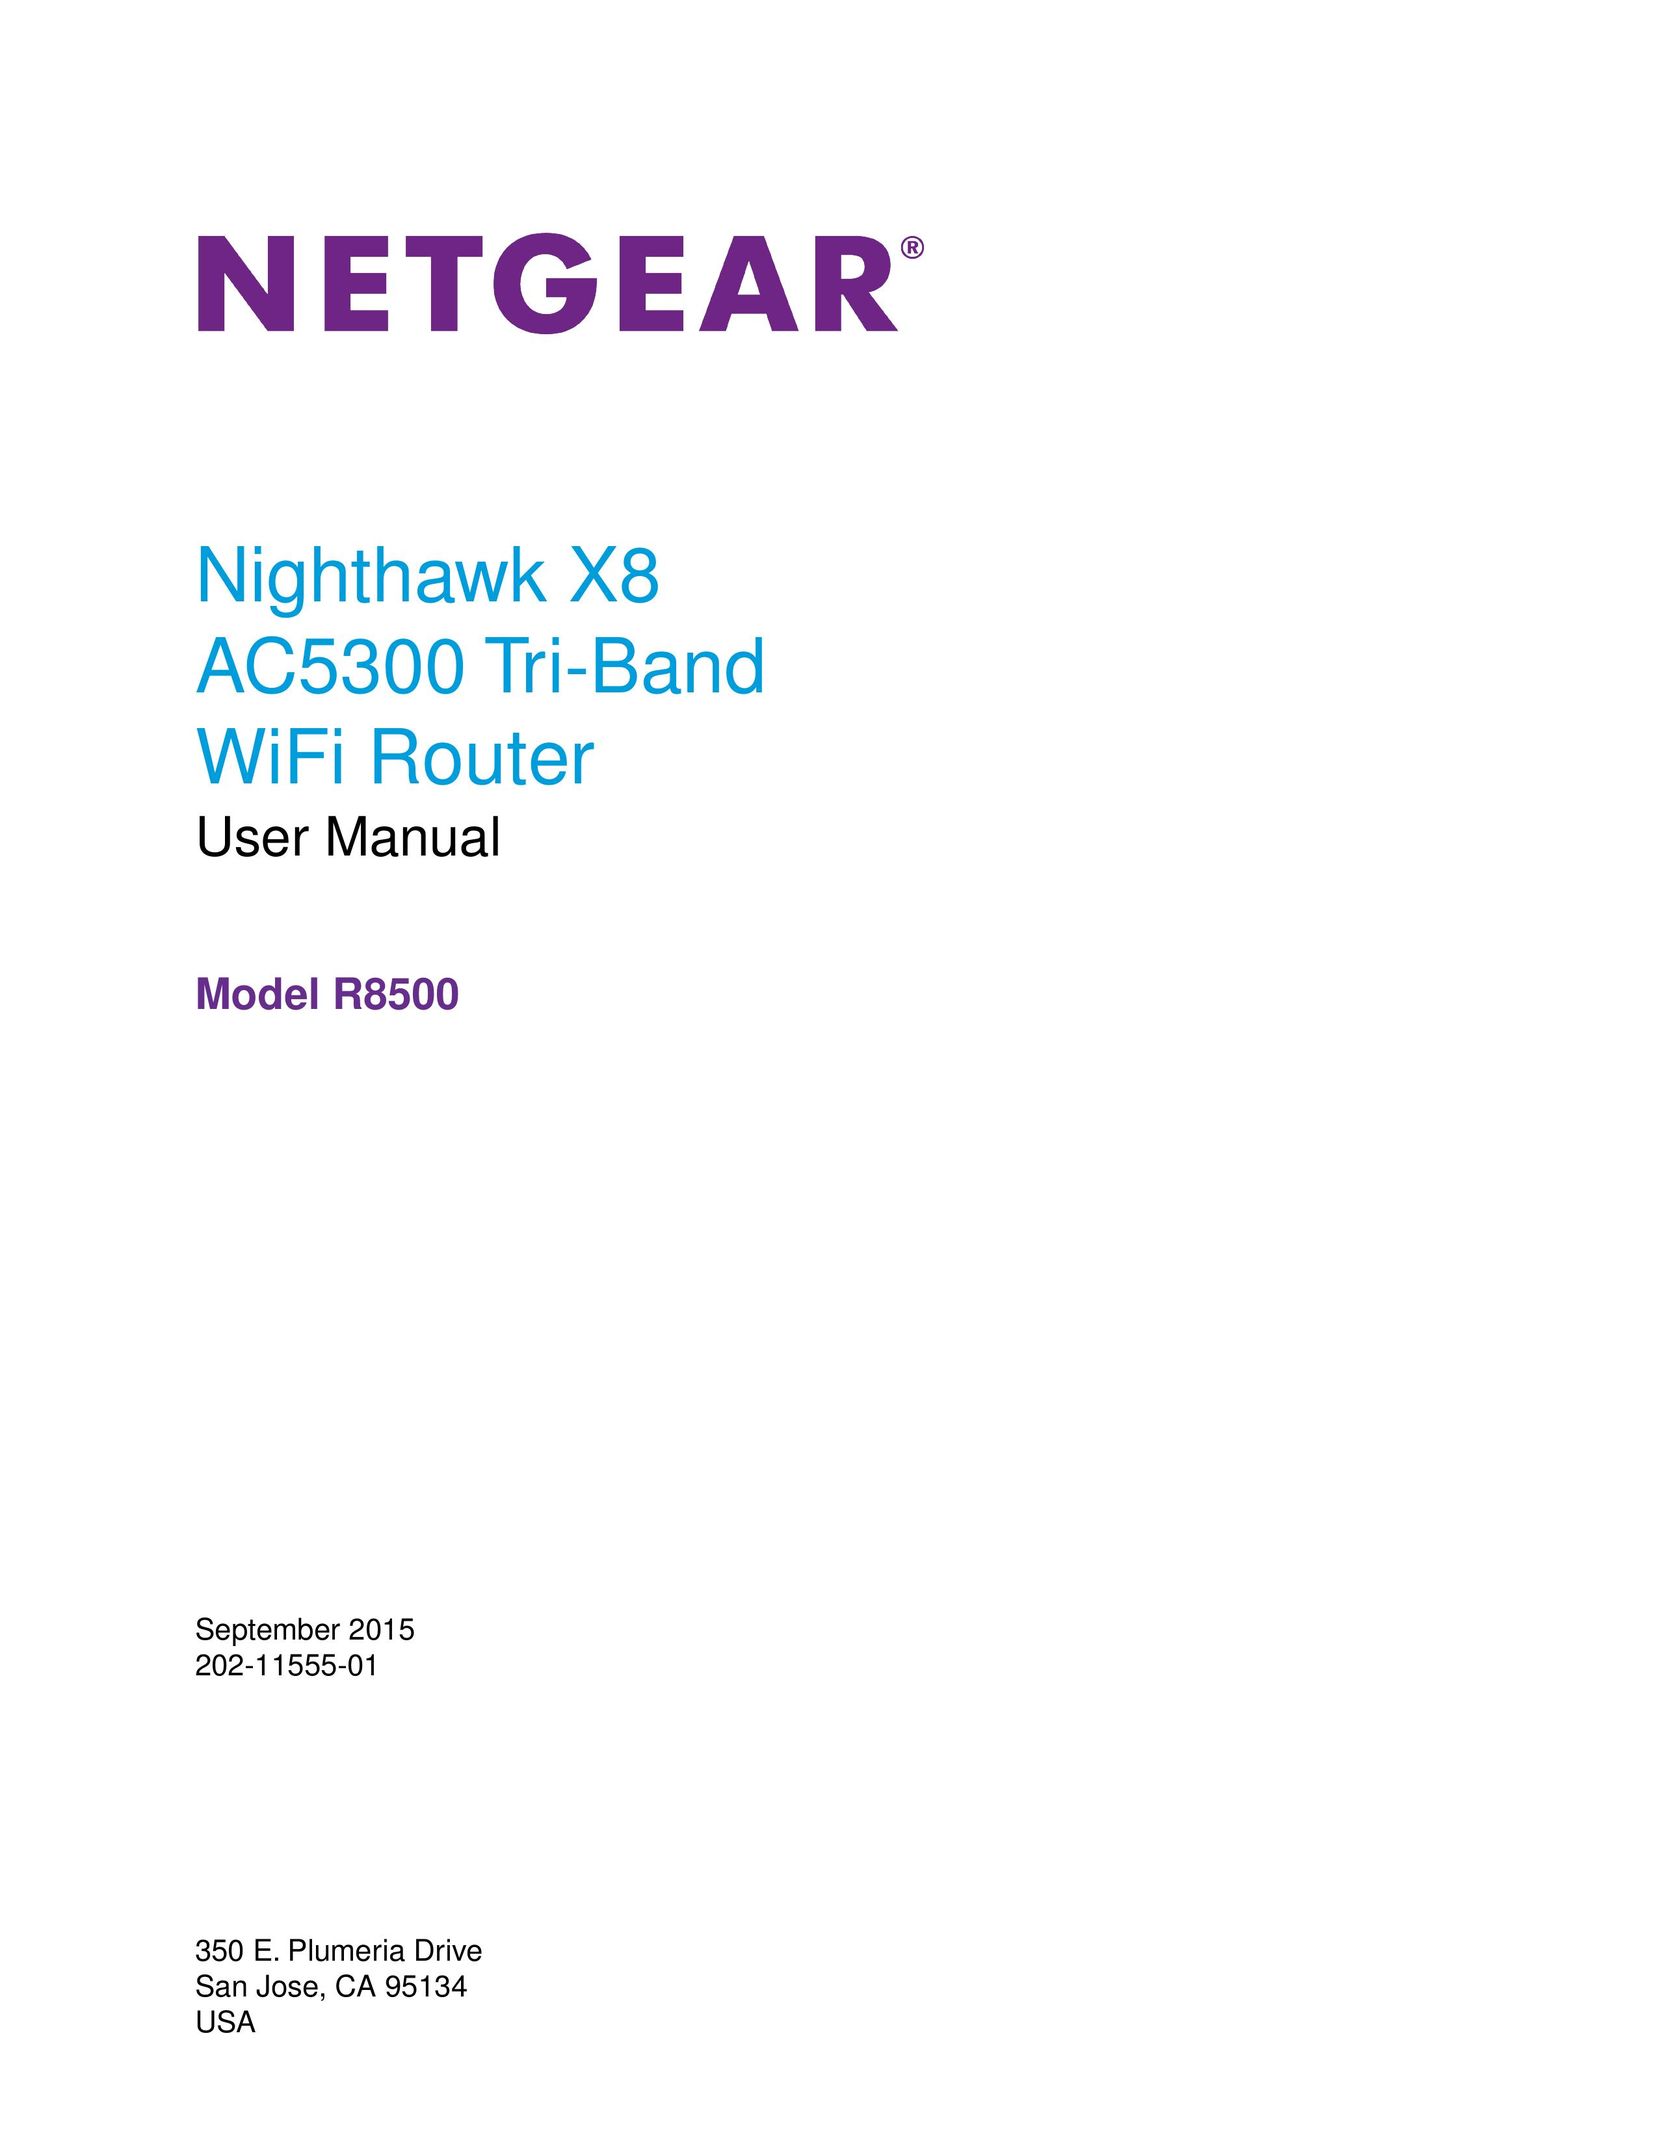 NETGEAR ac5300 Network Router User Manual